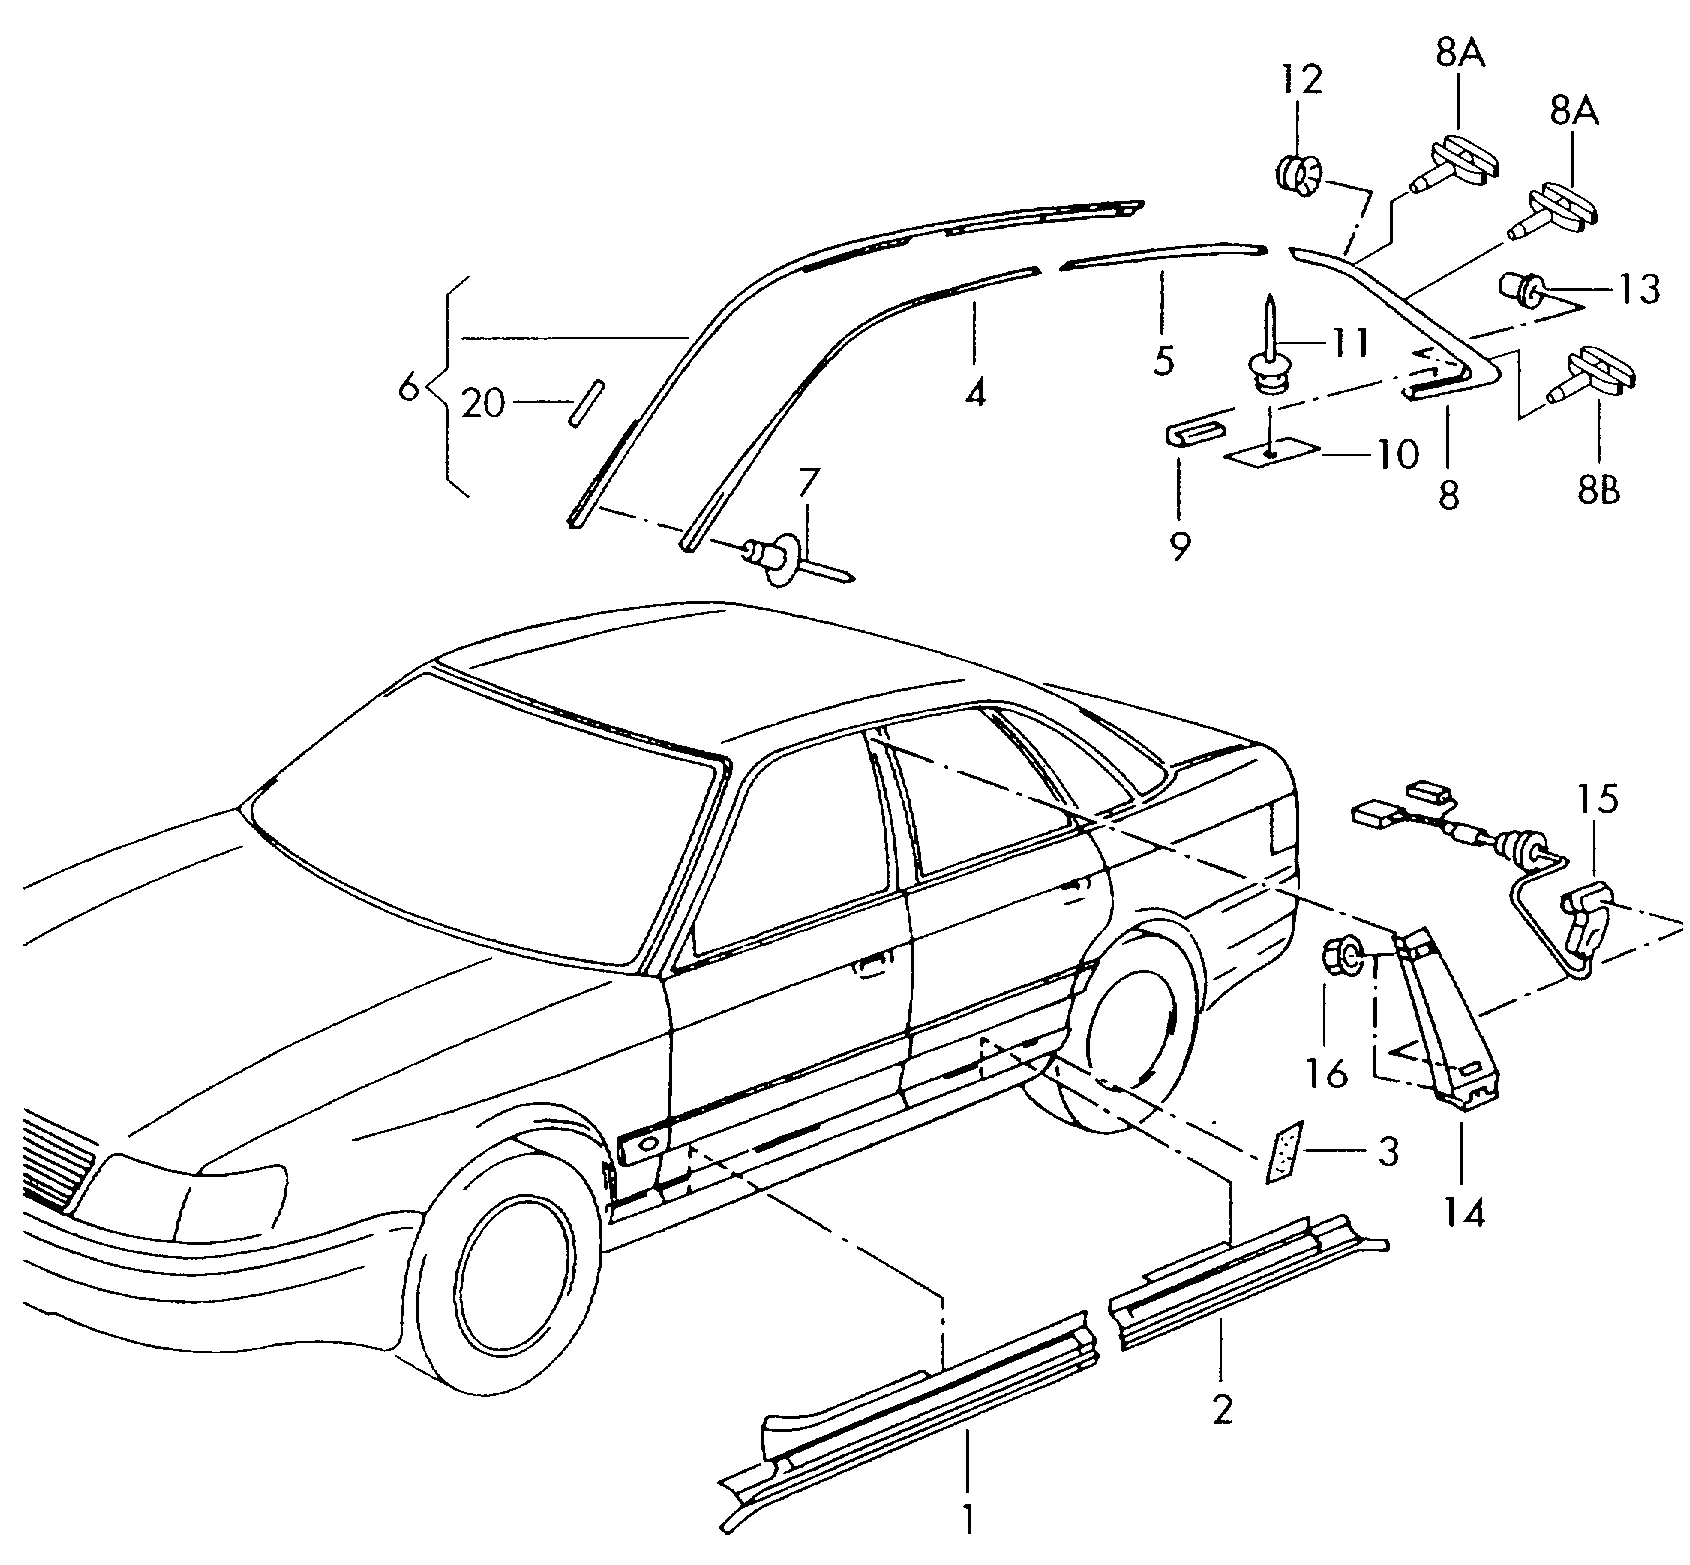 76355640  - Audi A8 - a8